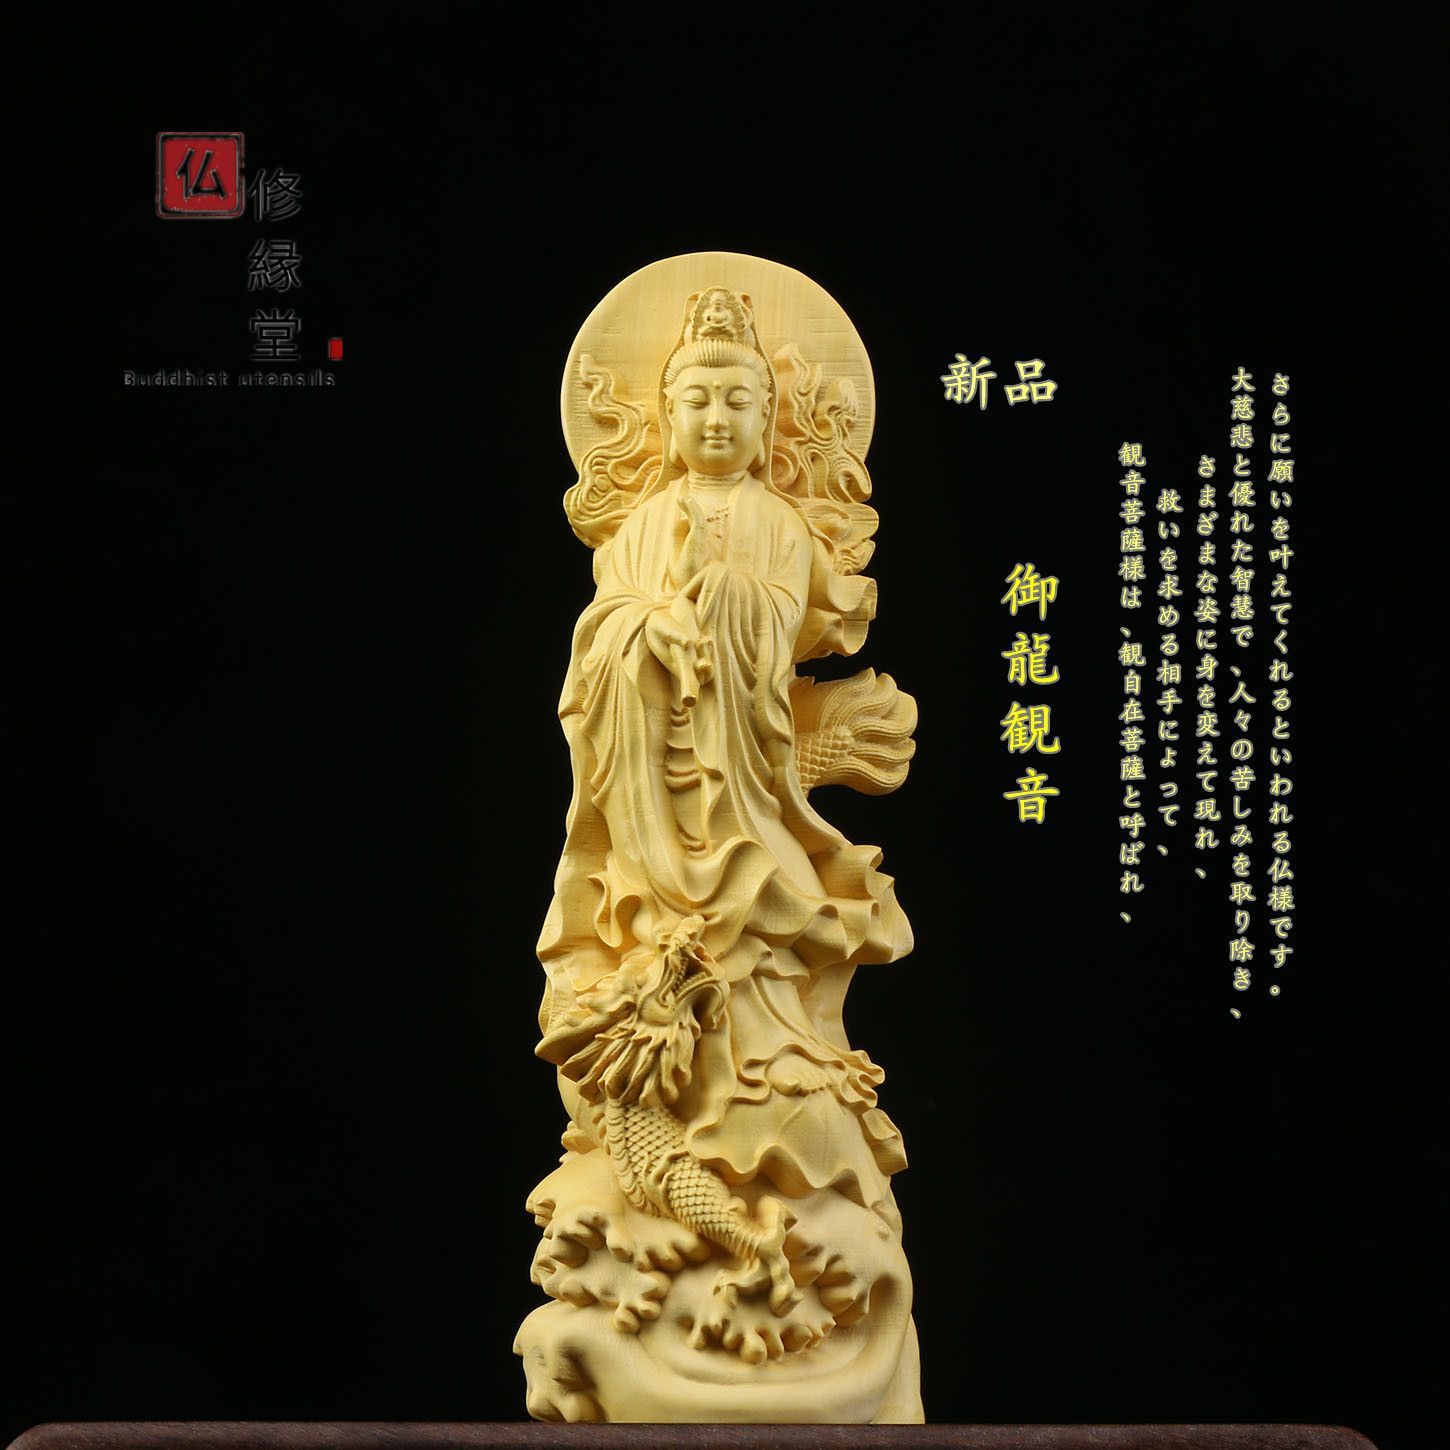 修縁堂】極上品 木彫り 仏像 娑婆三聖座像 仏教工芸品 総柘植材 精密